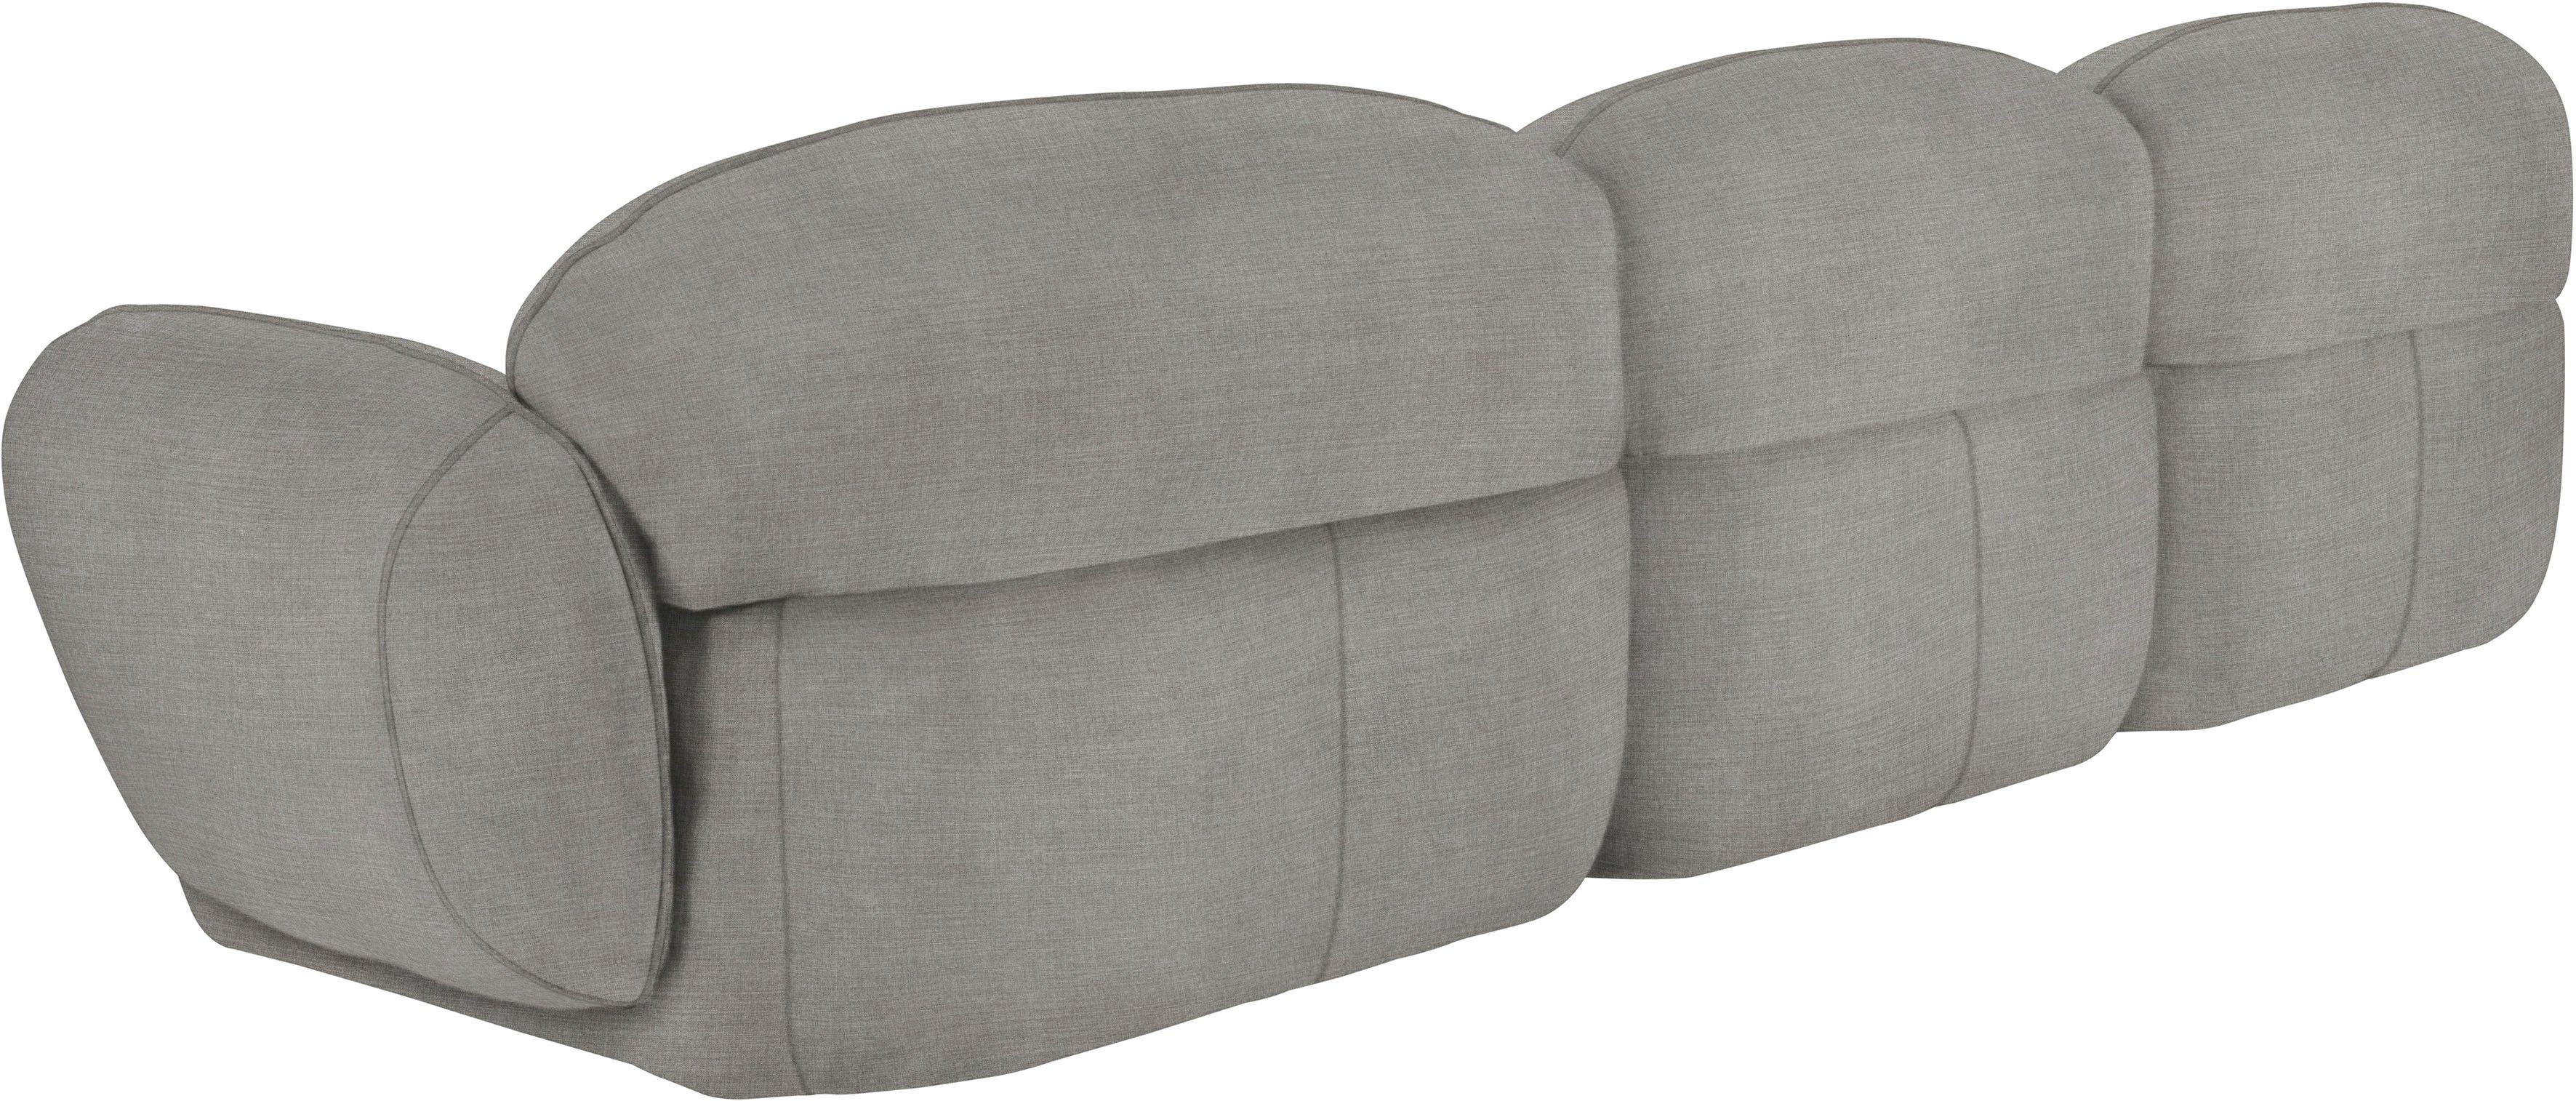 Bubble, furninova im komfortabel 3,5-Sitzer Memoryschaum, skandinavischen Design durch